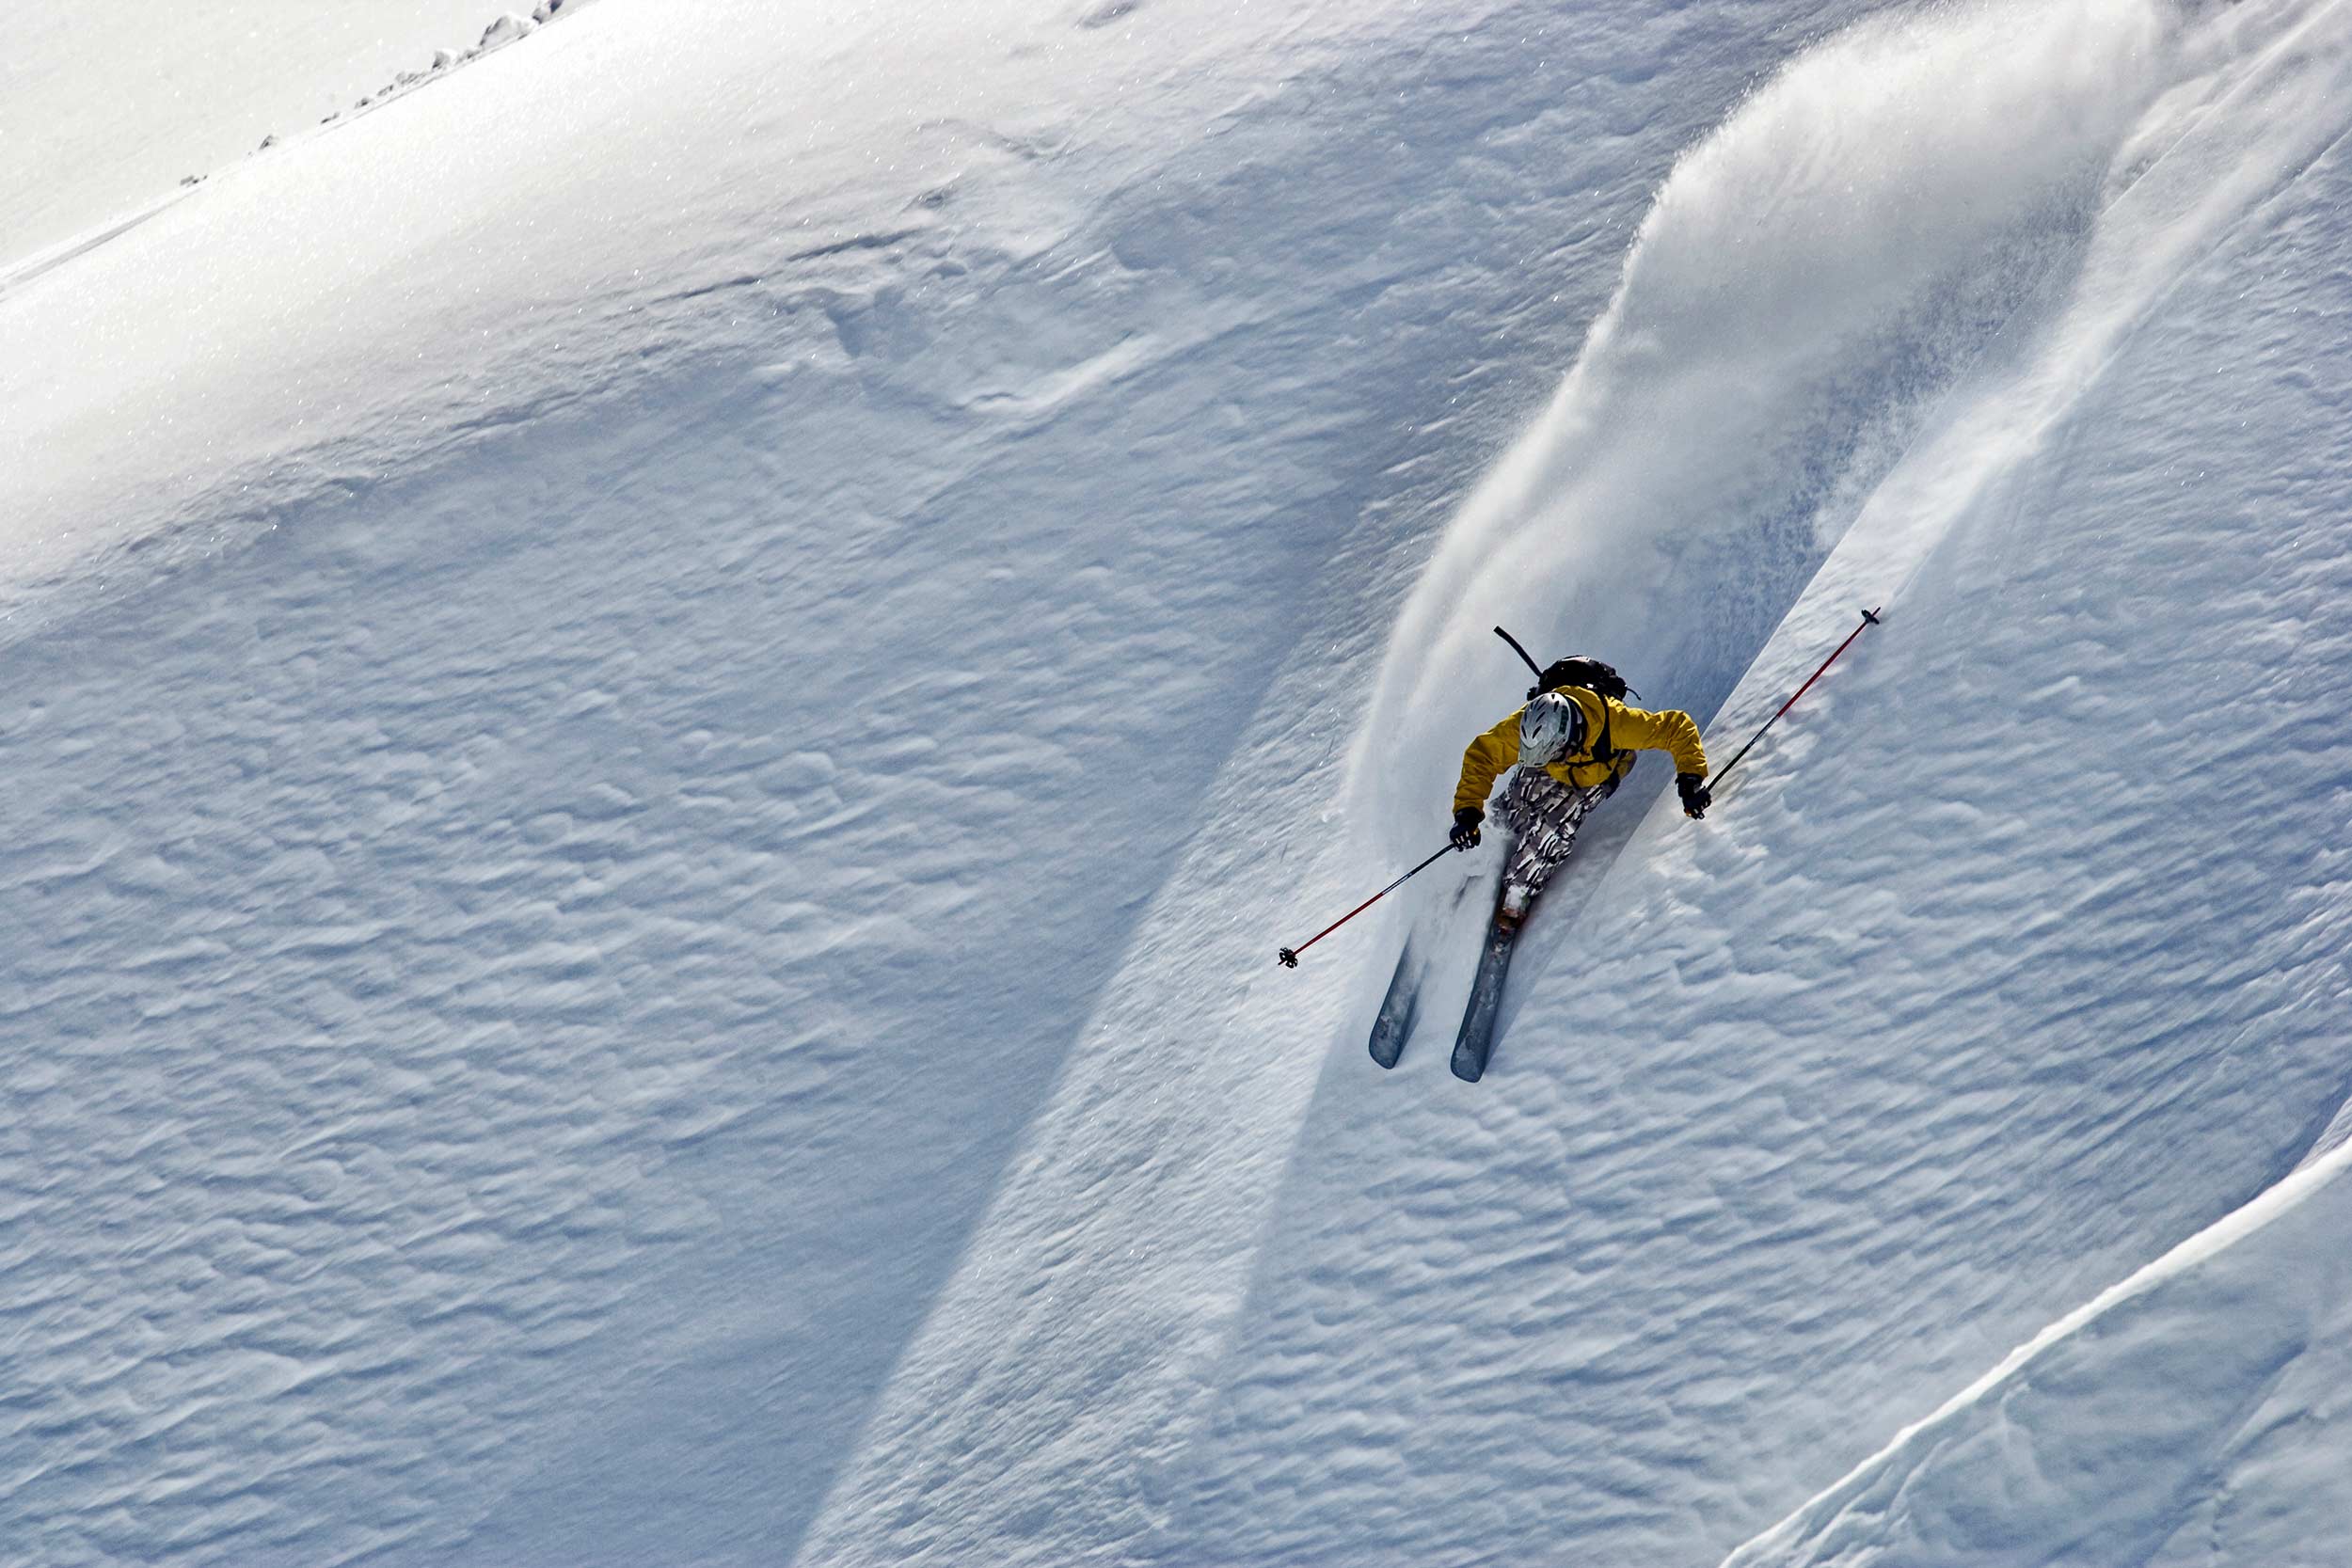 Free Ride Skier Turning In Powder Snow